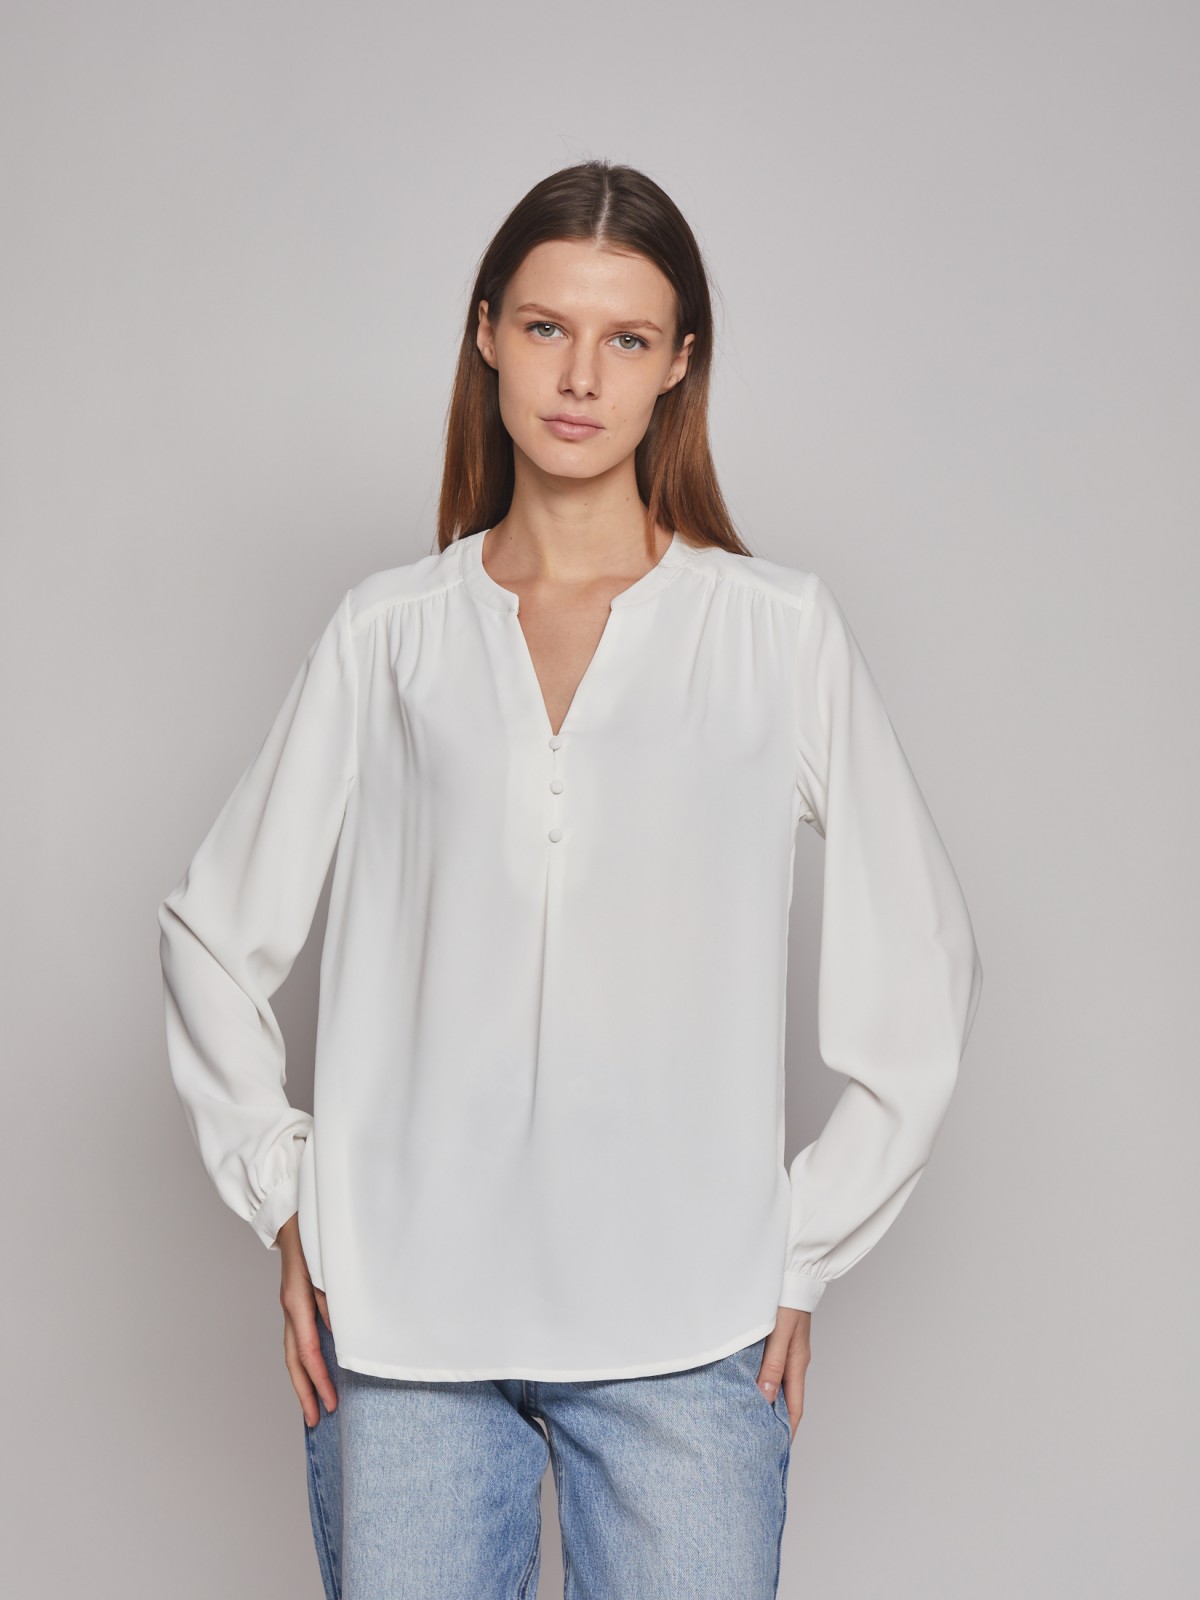 Блузка с длинным рукавом zolla 023121159202, цвет молоко, размер XS - фото 2